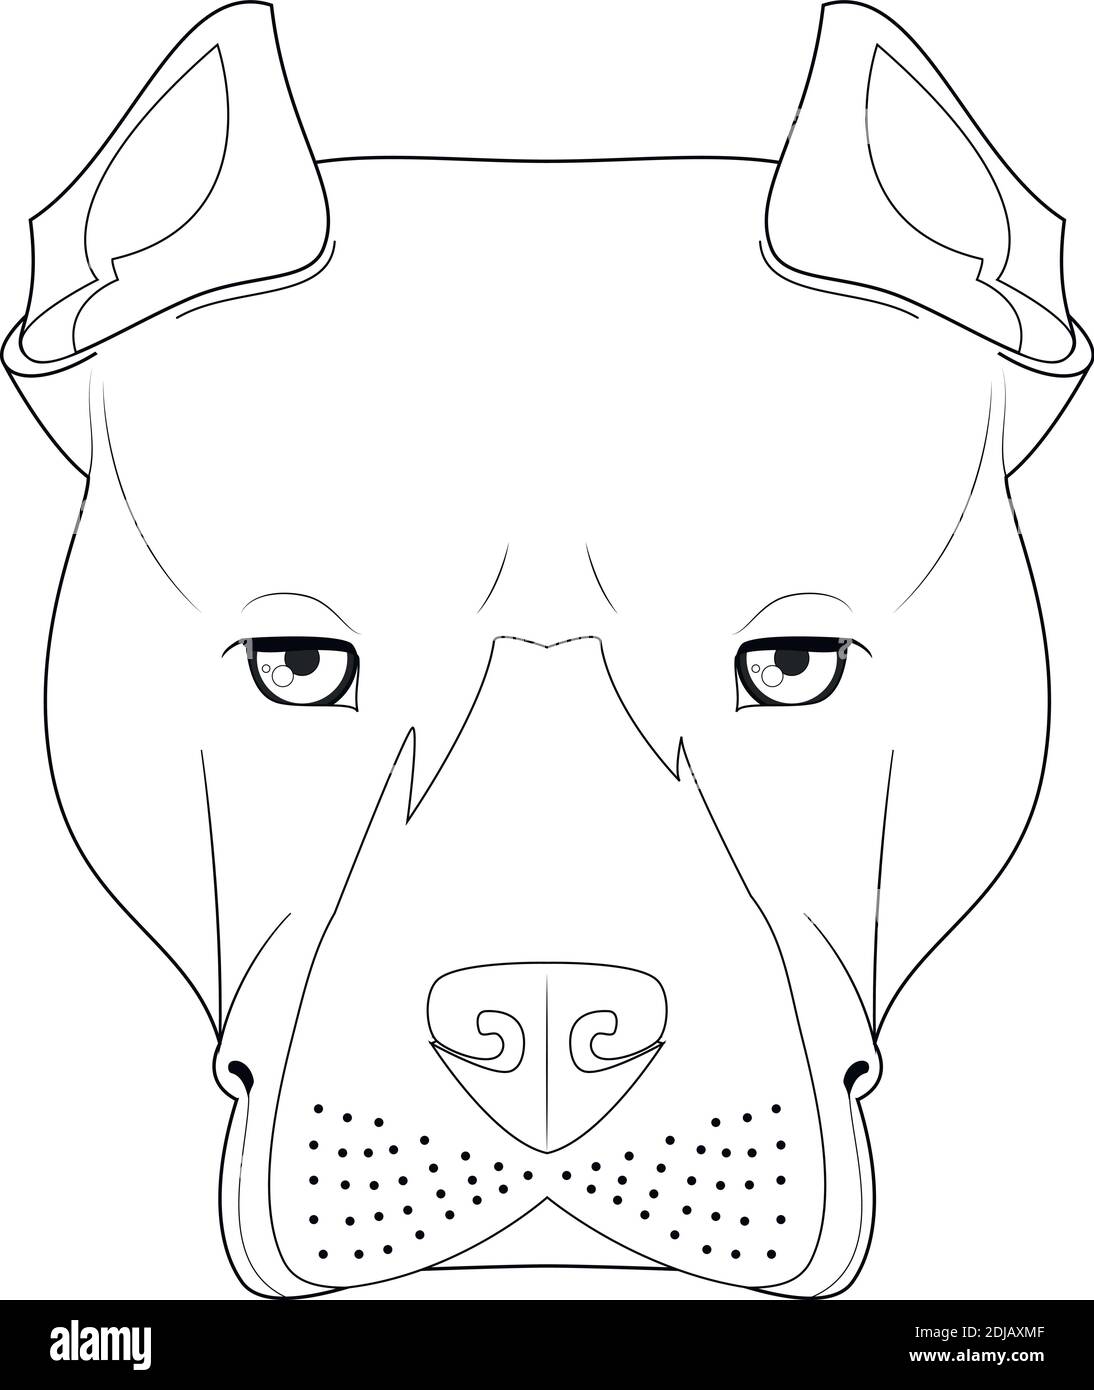 Pitbull ou American Staffordshire chien facile coloriage dessin animé illustration vectorielle. Isolé sur fond blanc Illustration de Vecteur